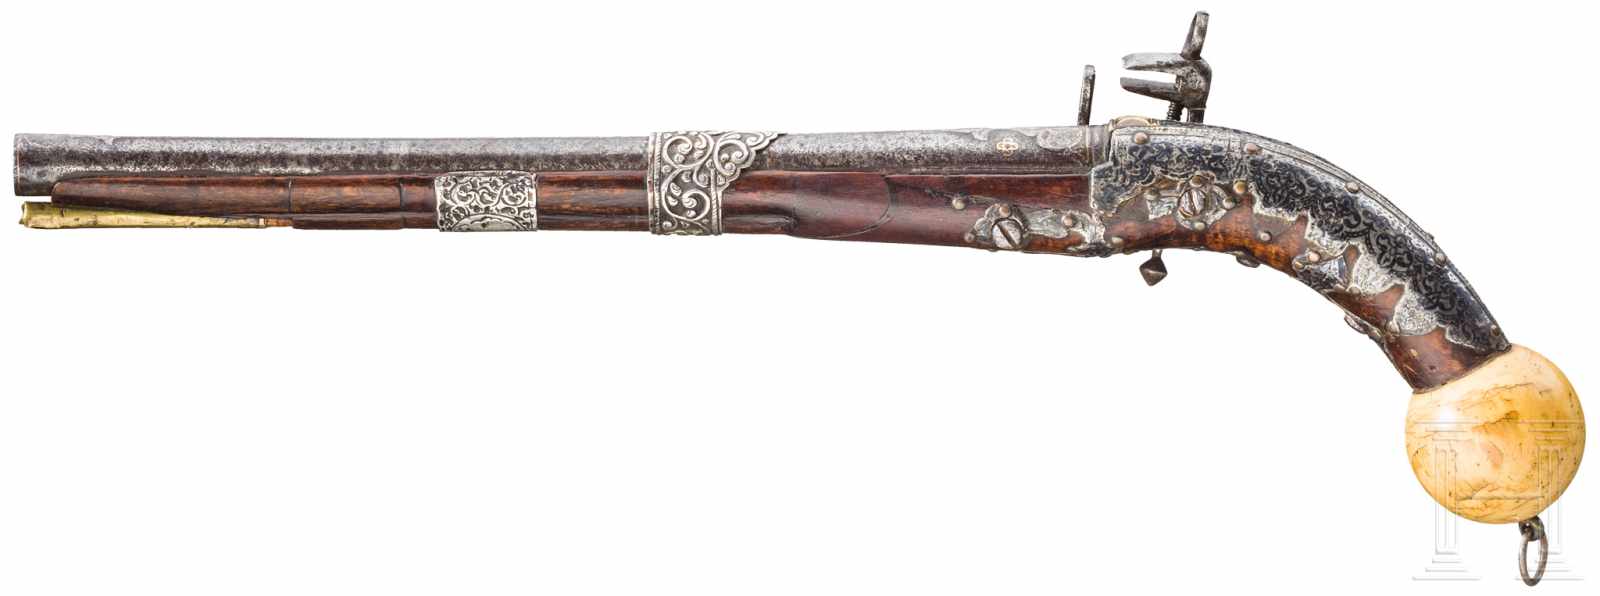 Silbermontierte Miqueletpistole, Kaukasus, 2. Hälfte 19. Jhdt.Runder Lauf mit geschnittener - Image 2 of 2